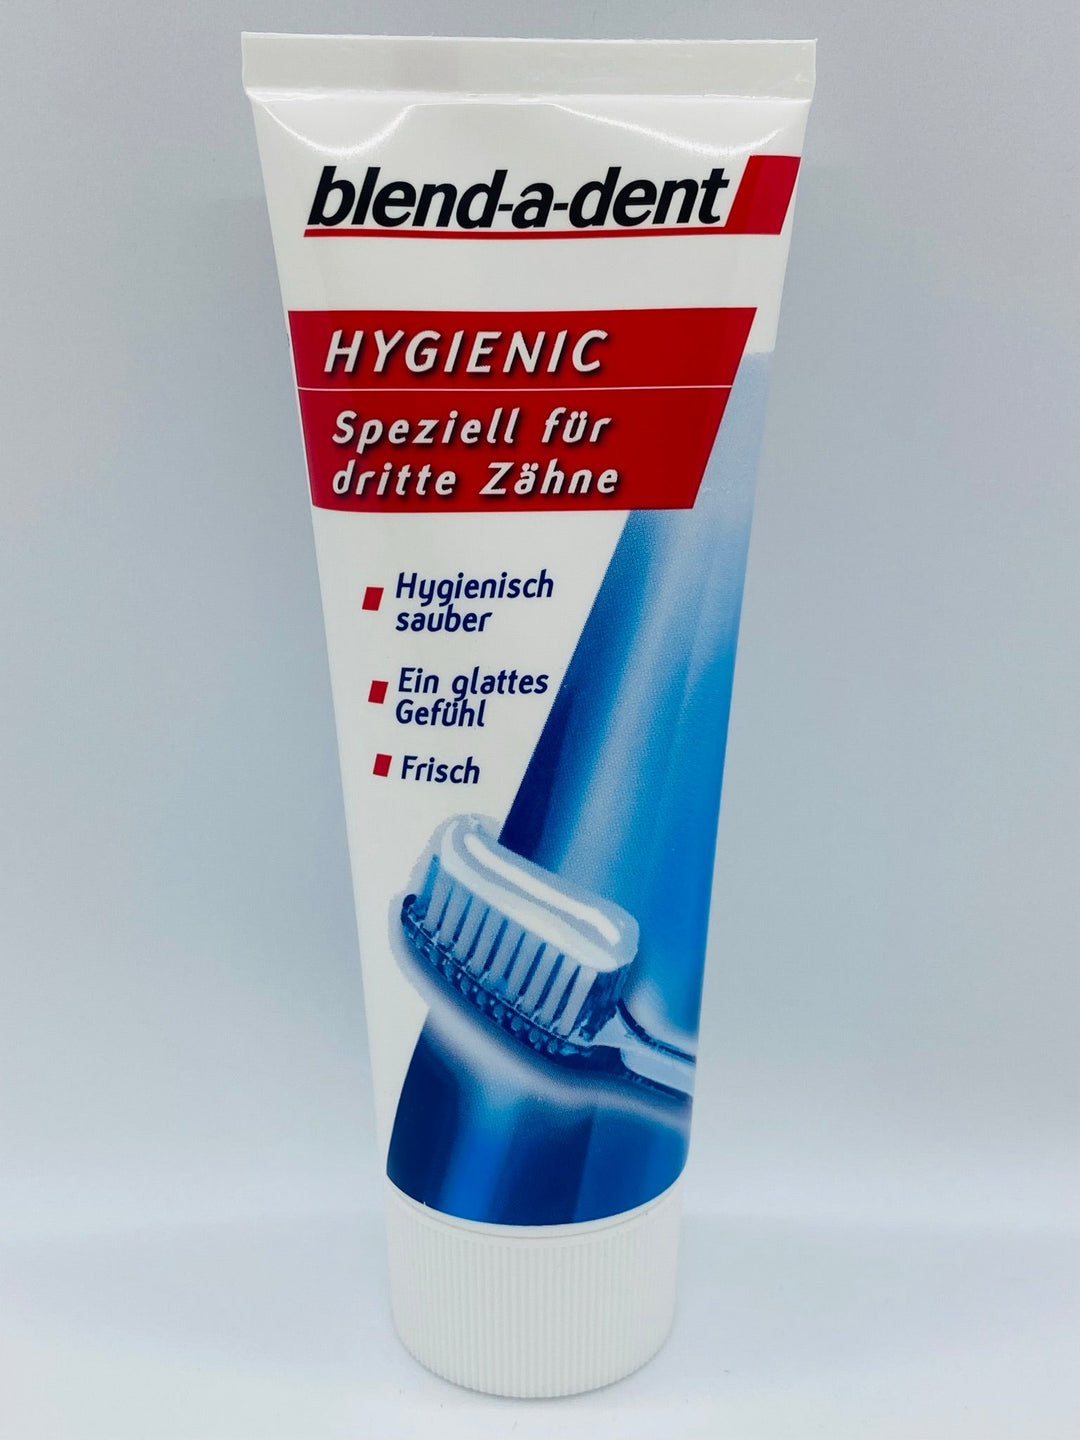 blend-a-dent Hygienic